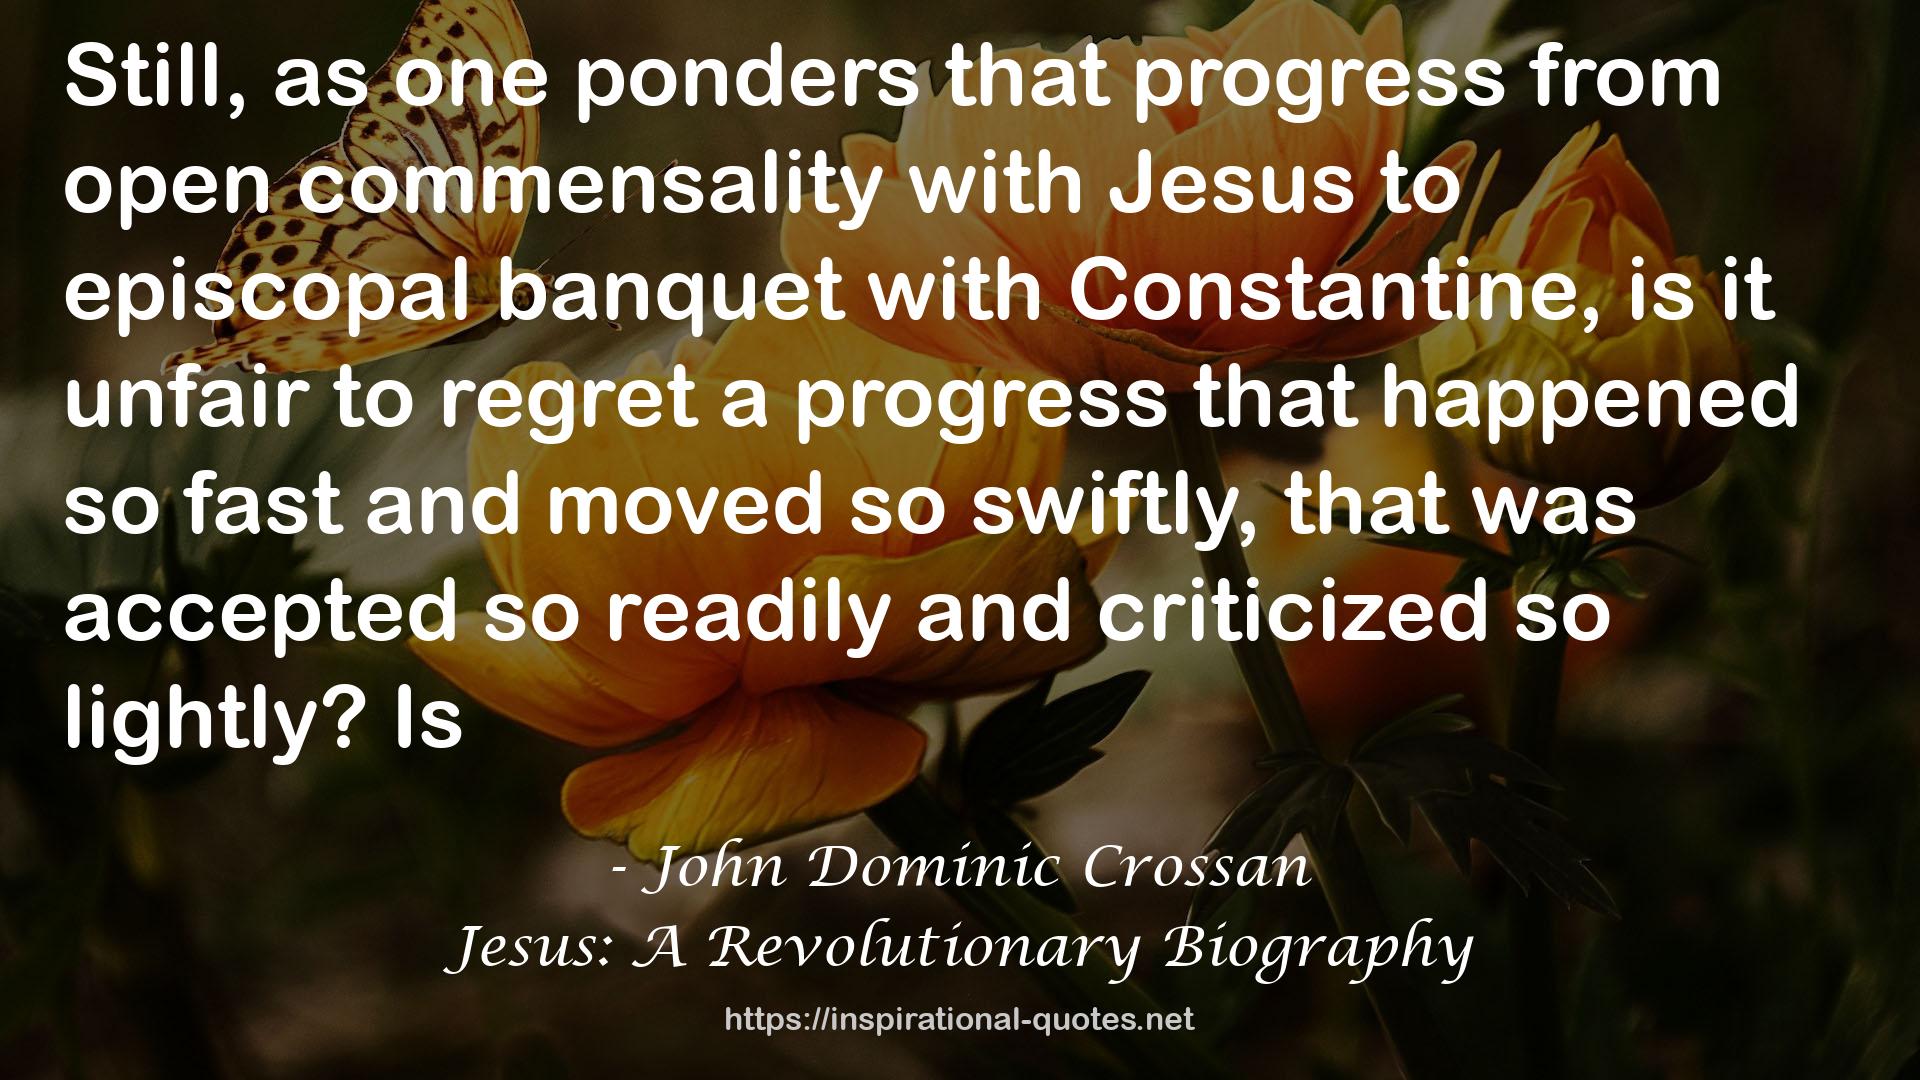 Jesus: A Revolutionary Biography QUOTES